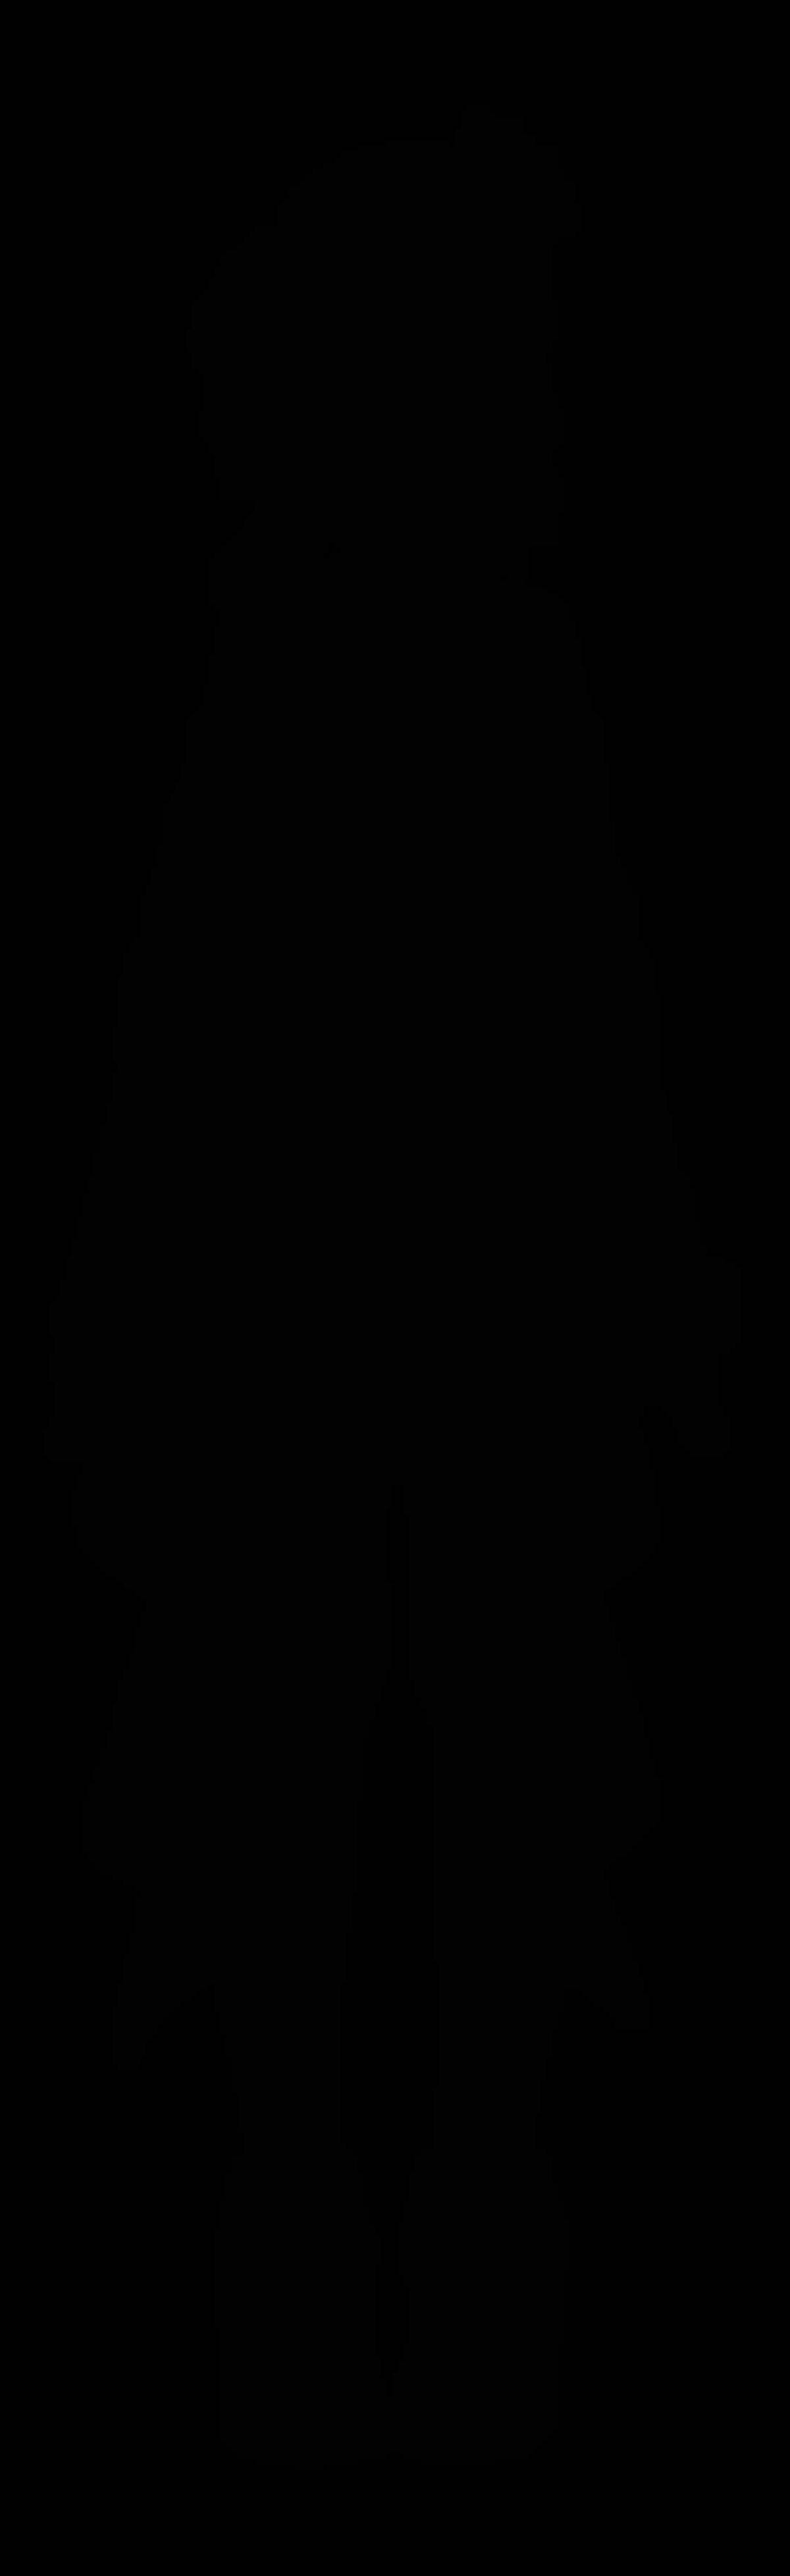 ホロライブ所属vtuber 星街すいせい 新live2dモデルお披露目放送と転籍のお知らせ 19年11月29日 エキサイトニュース